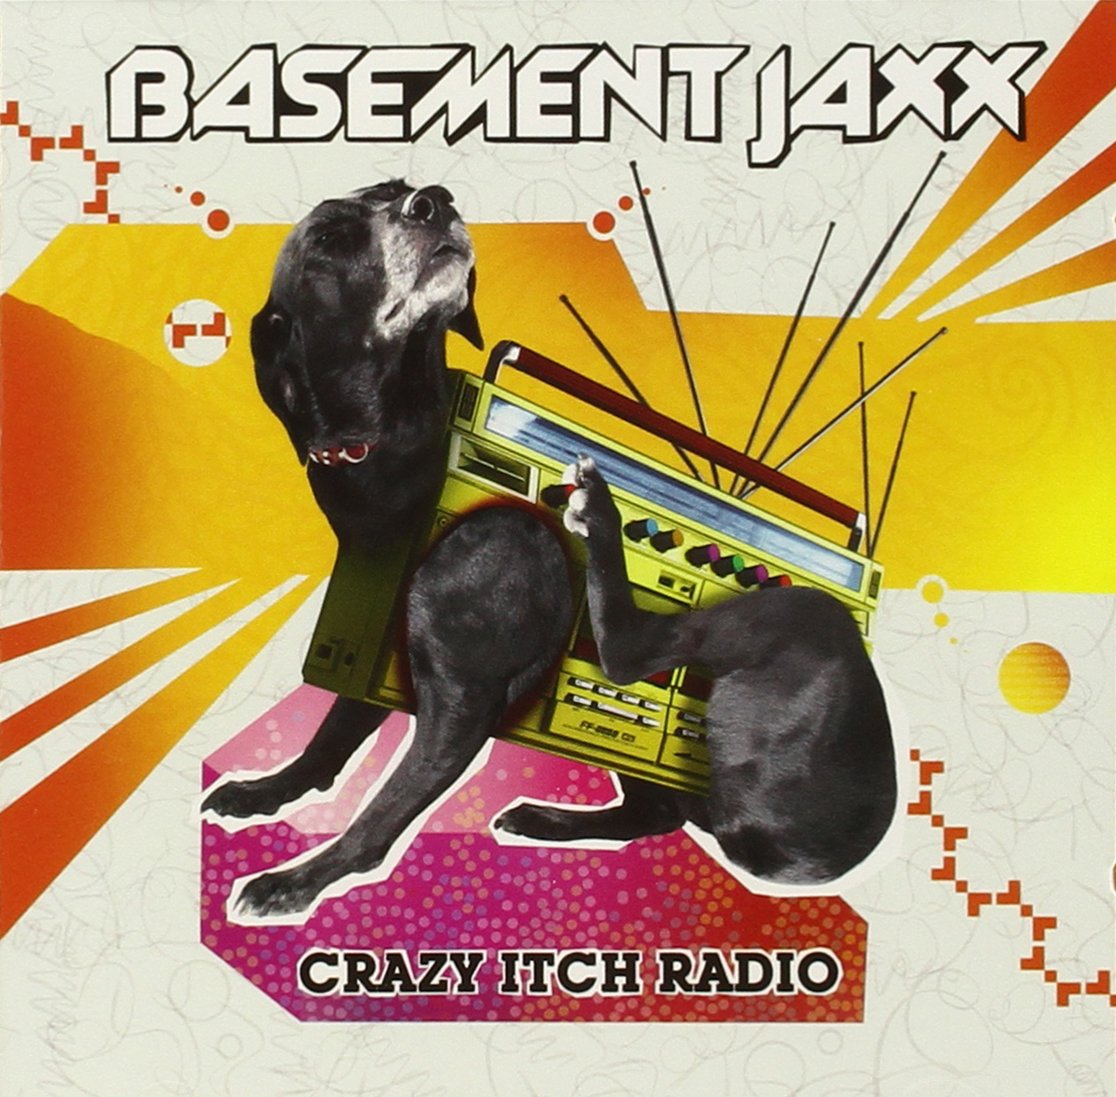 Crazy Itch Radio | Basement Jaxx